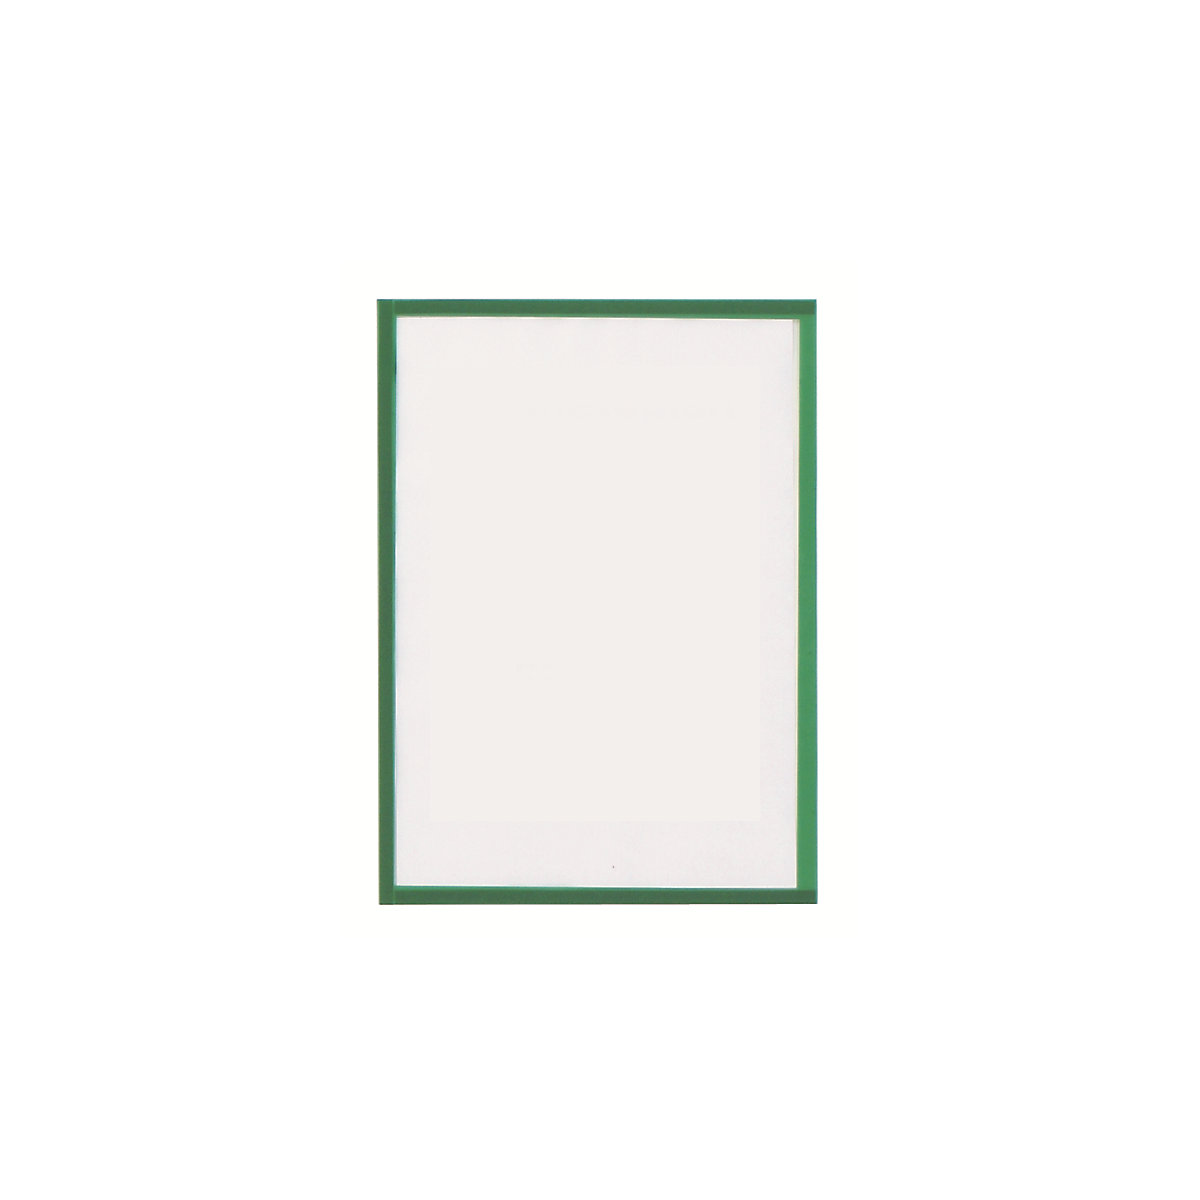 magnetofix vision panel – magnetoplan, format A4, pack of 5, green frame-5